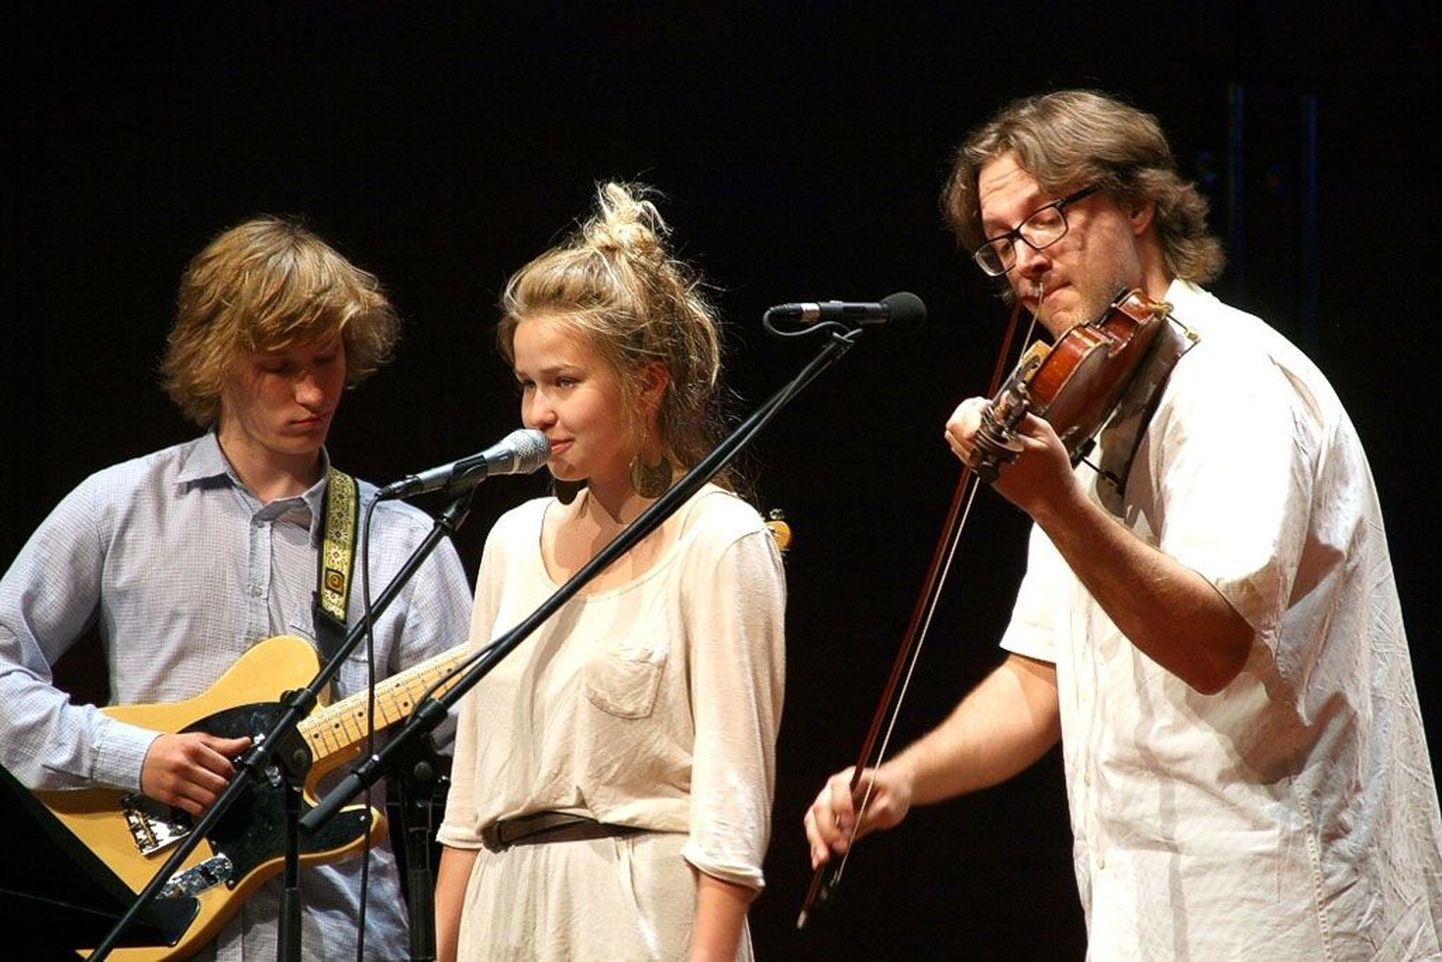 Valter Ojakääru Pärnule pühendatud laulu esitasid Kalle Pilli, Lee Taul ja Indrek Palu.